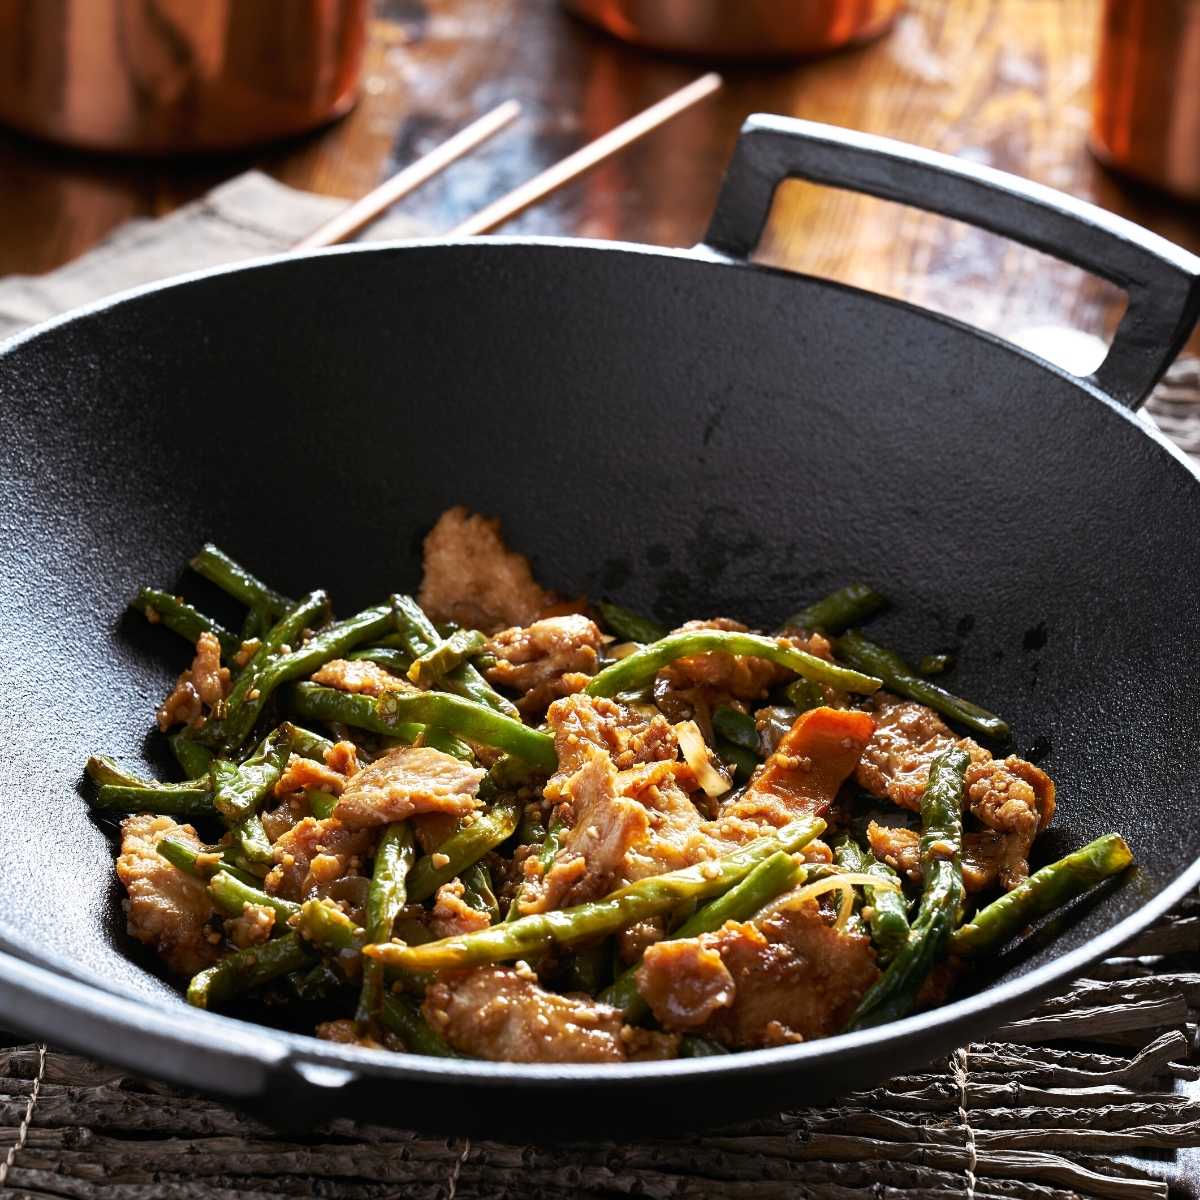 Cuisine et recette asiatique avec ce wok en fonte avec poignée en bois